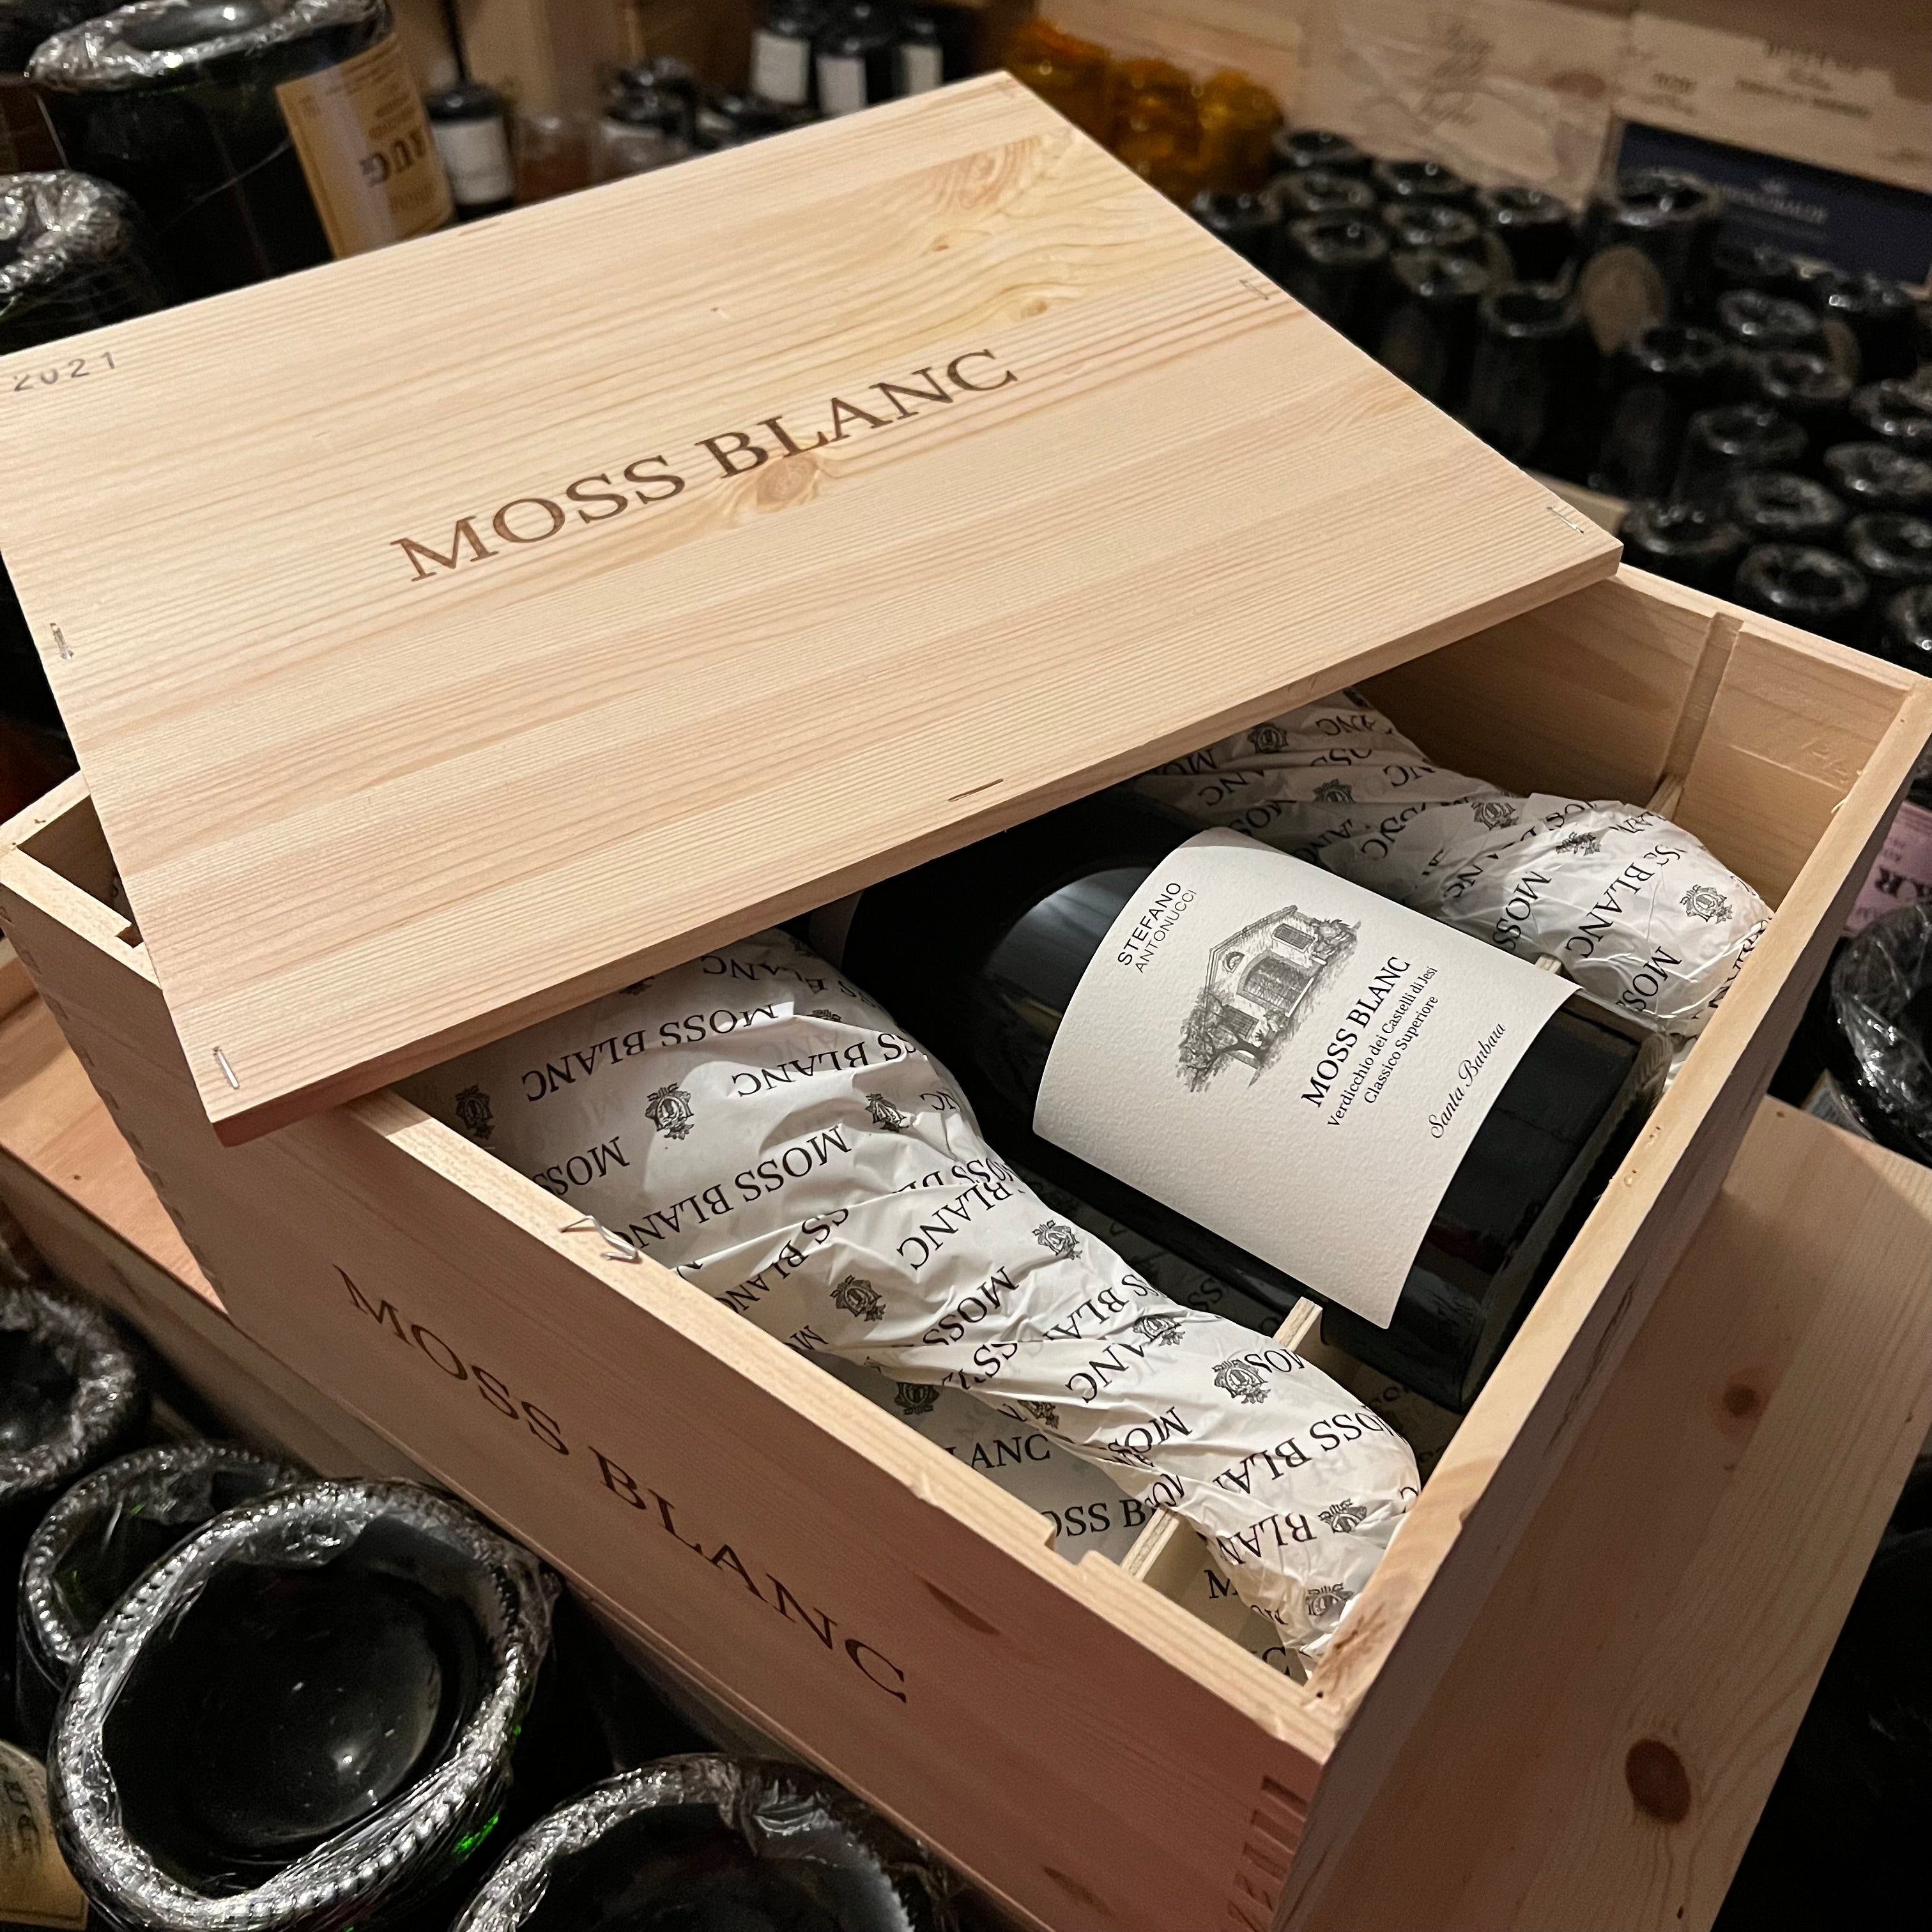 Moss Blanc 2021 Santa Barbara Verdicchio dei Castelli di Jesi DOC Classico Superiore - Cassa Legno 6 Bottiglie